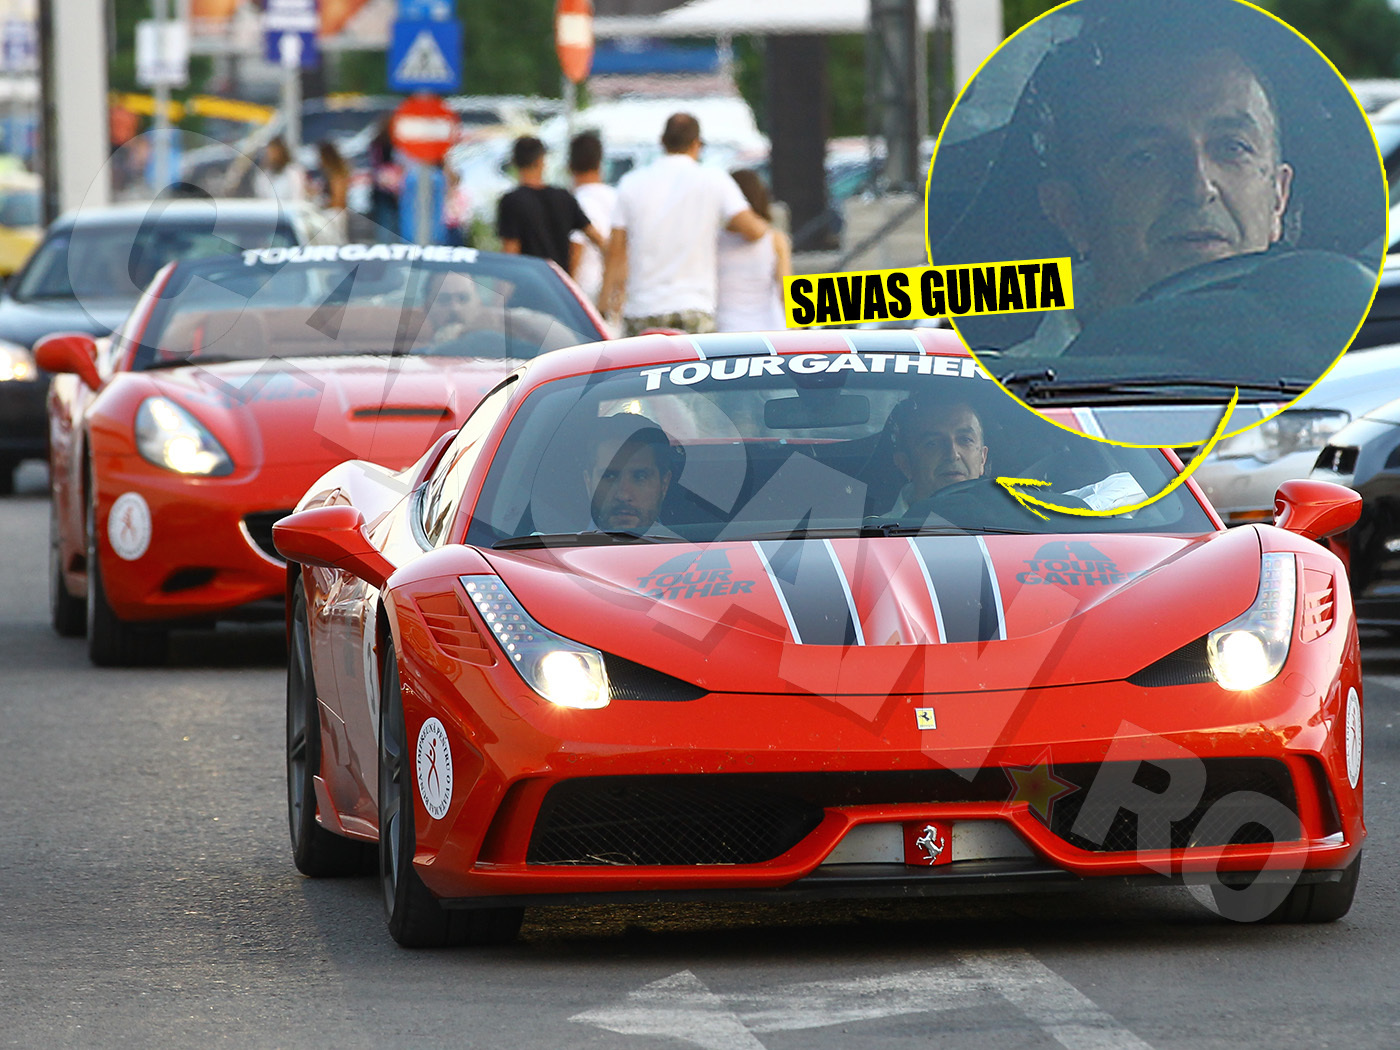 Milionarul turc Savas Gunata a apărut la LOFT Mamaia cu două Ferrari-uri roşii, semn de prosperitate